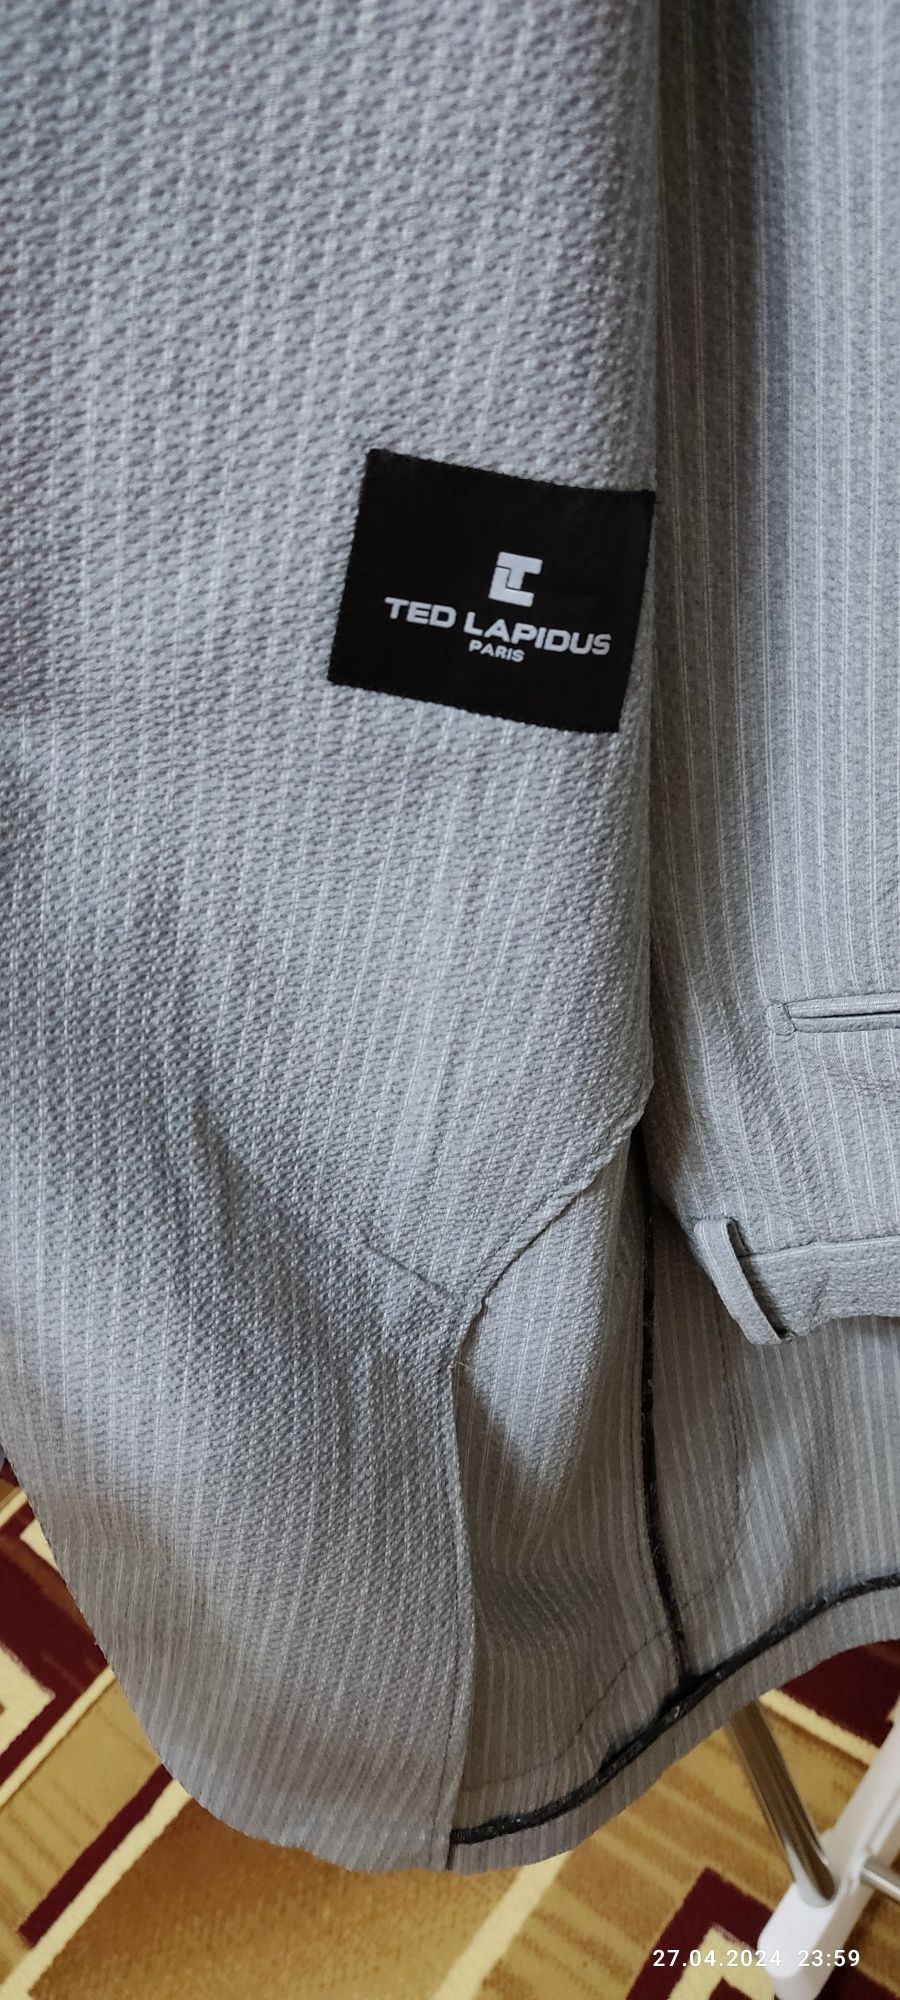 Кастюм брюк бренд "Ted Lapidus"